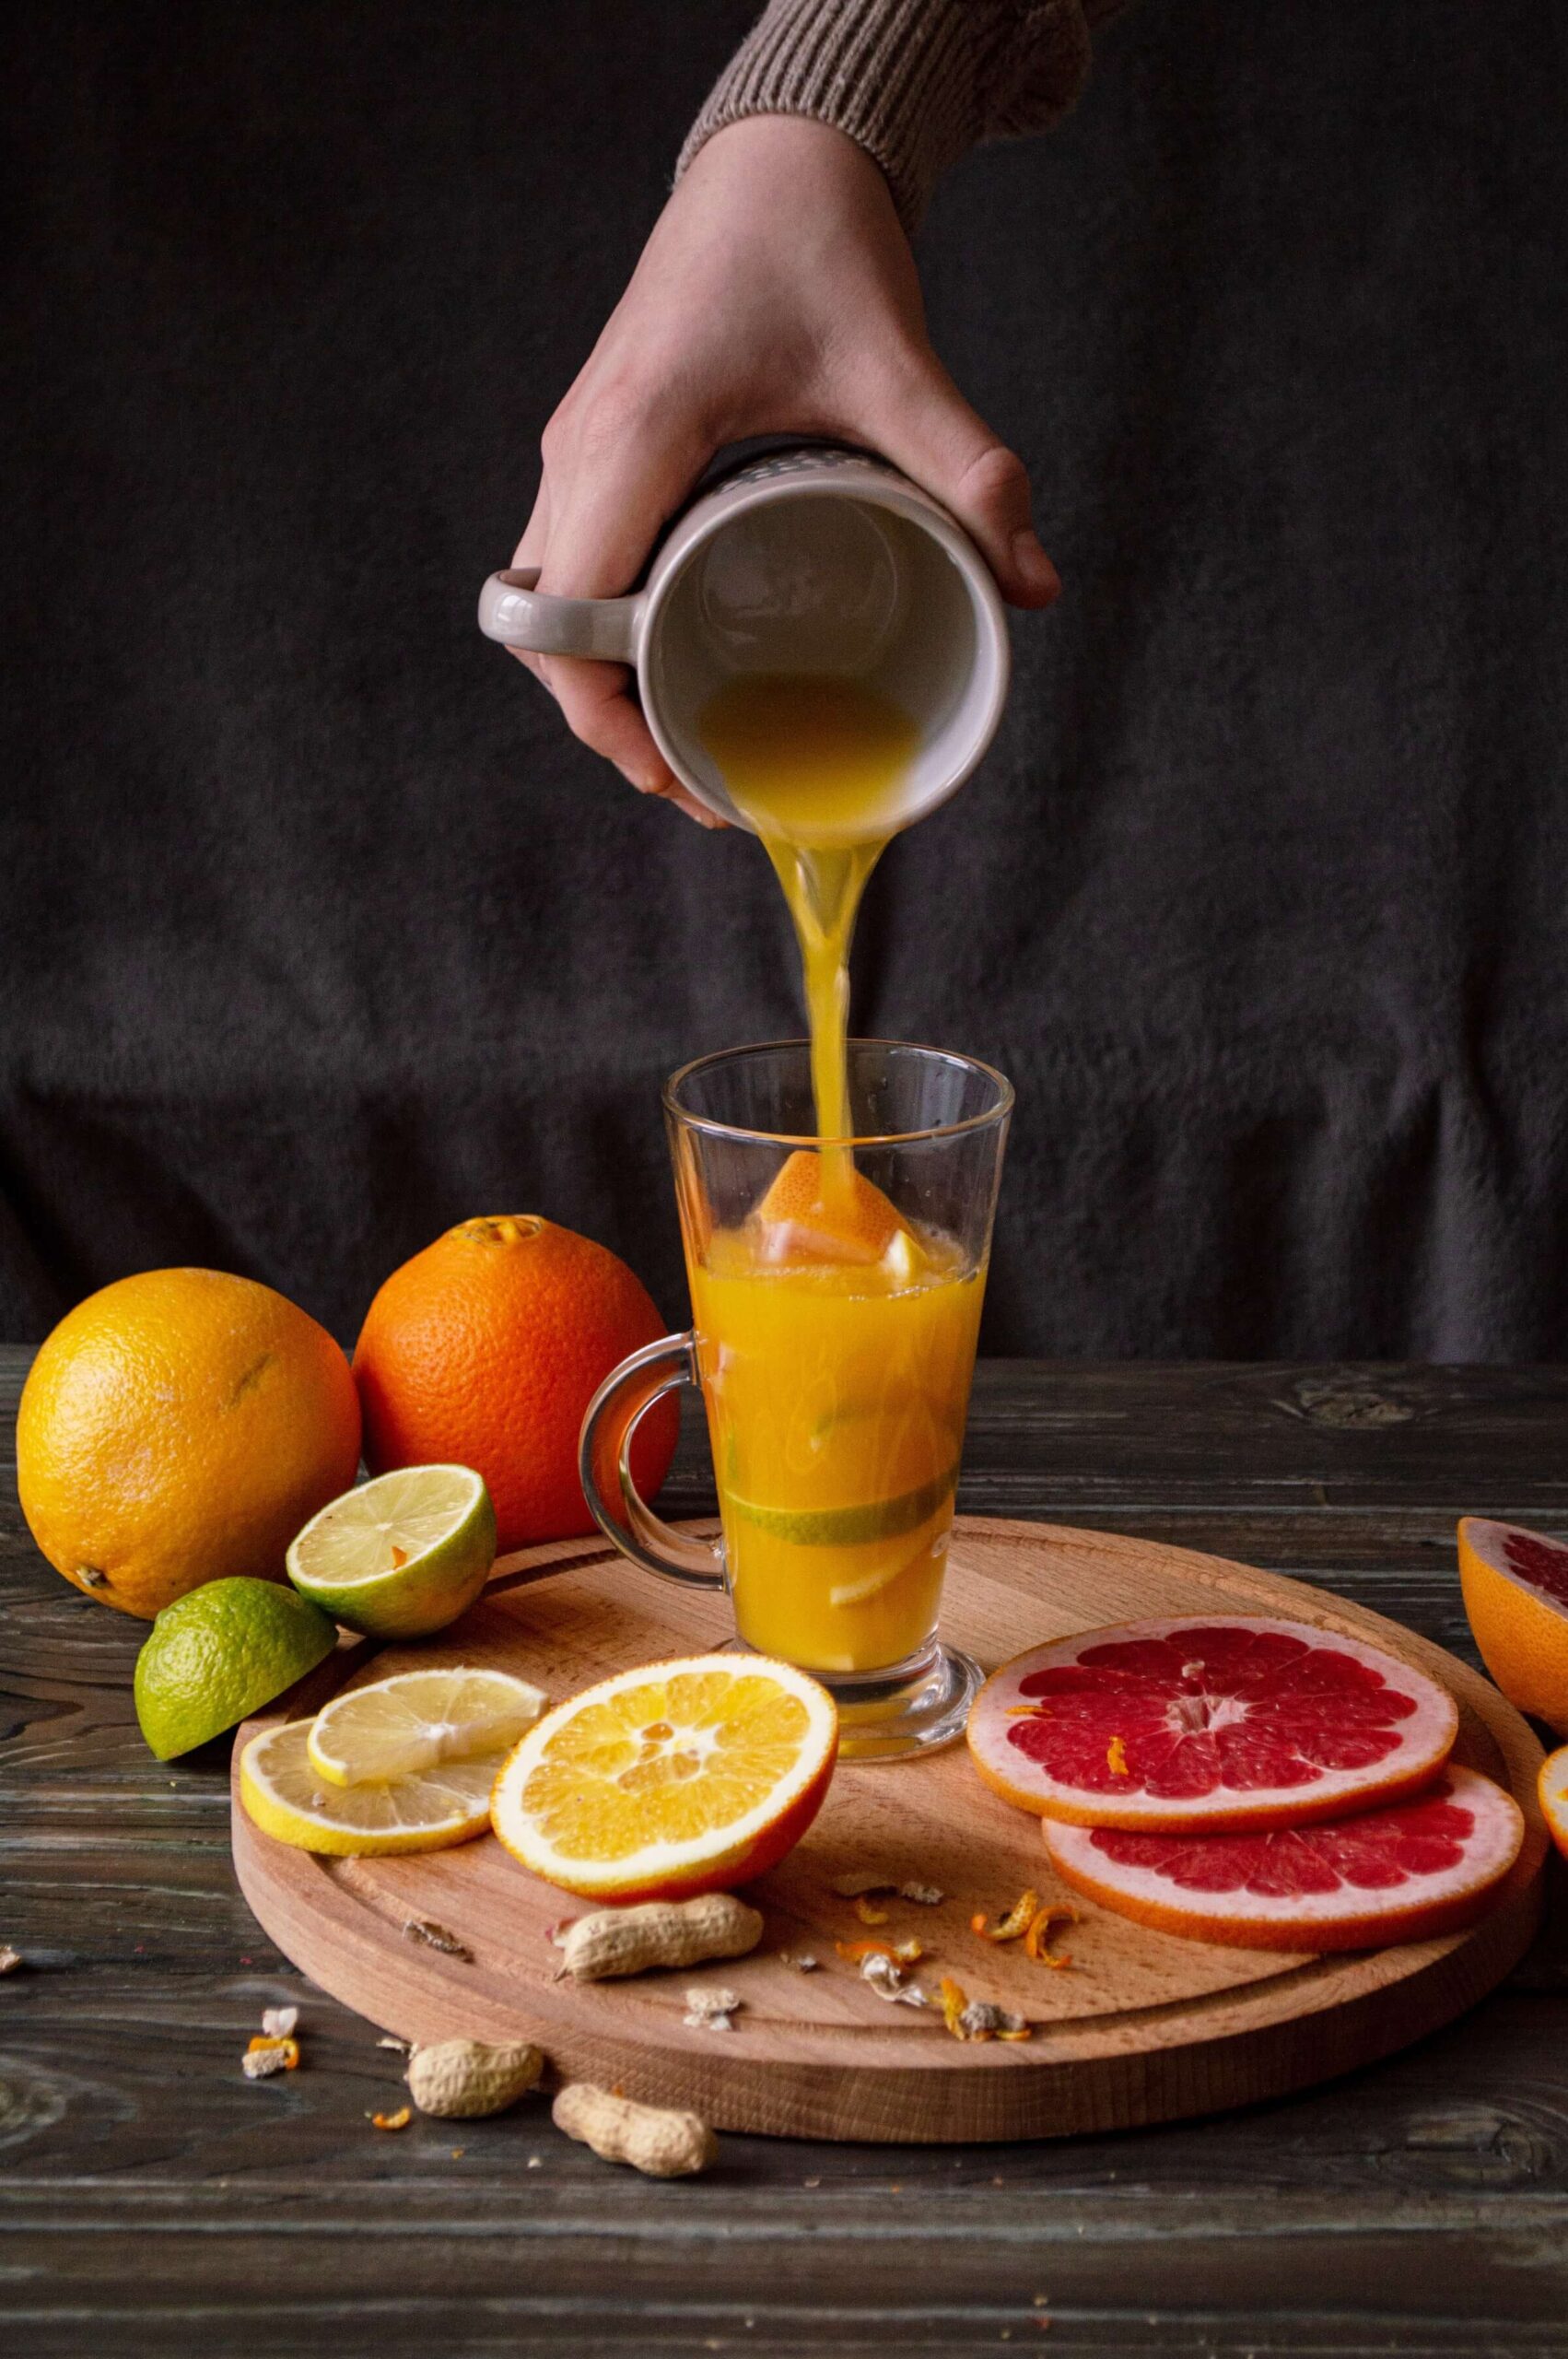 Can You Freeze Orange juice?